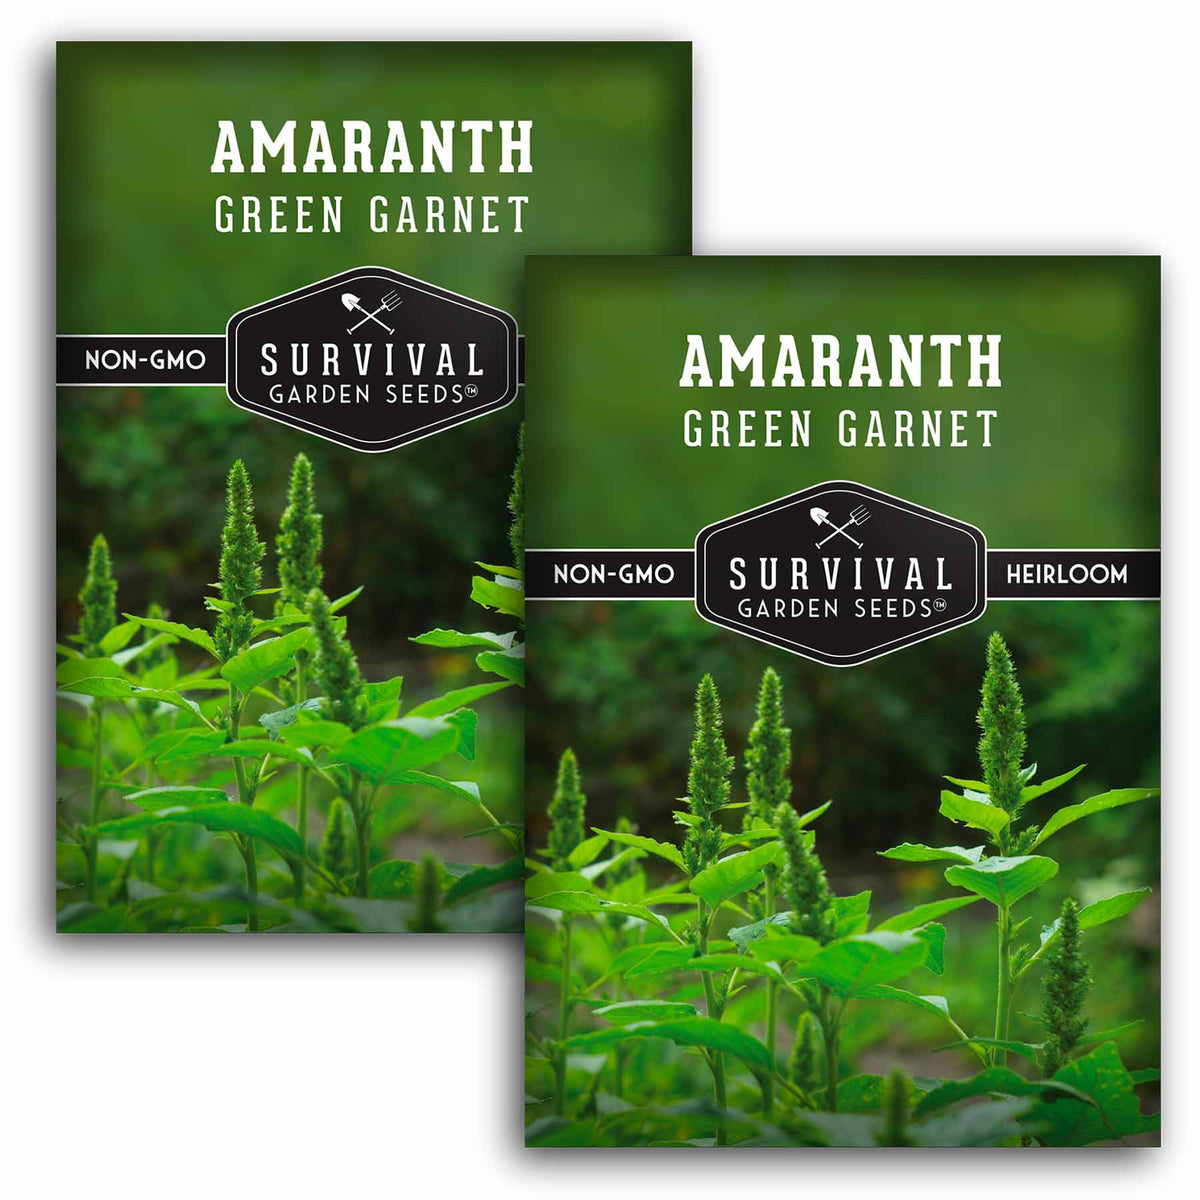 2 Packets of Green Garnet Amaranth seeds